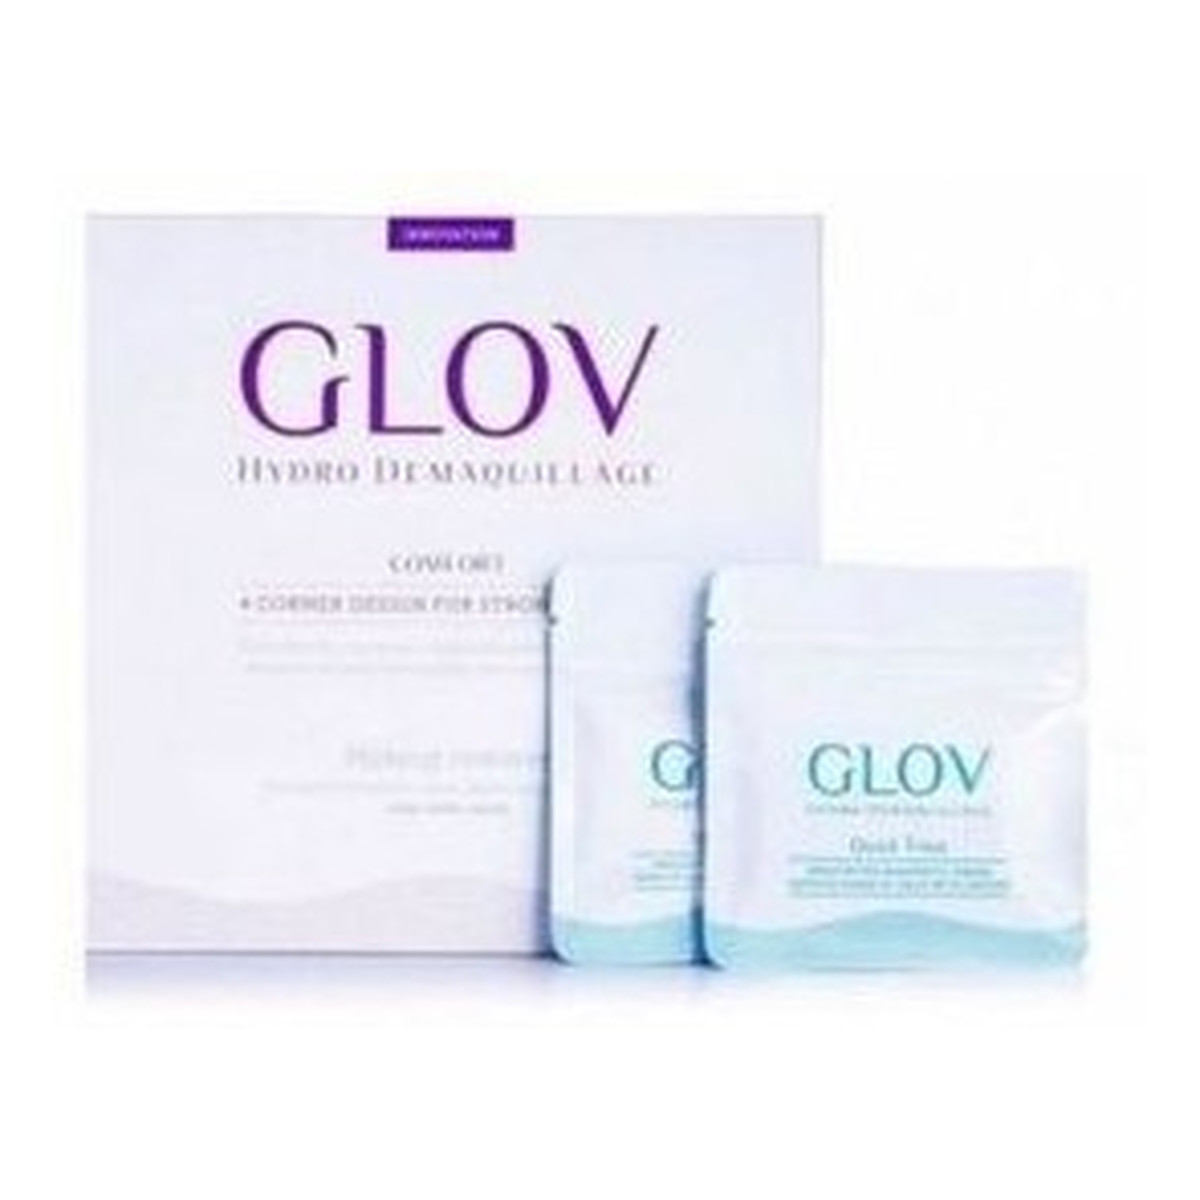 Glov Phenicoptere Glov Hydro Demaquillage Silver Zestaw rękawiczek do makijażu Comfort + Quick Treat x2